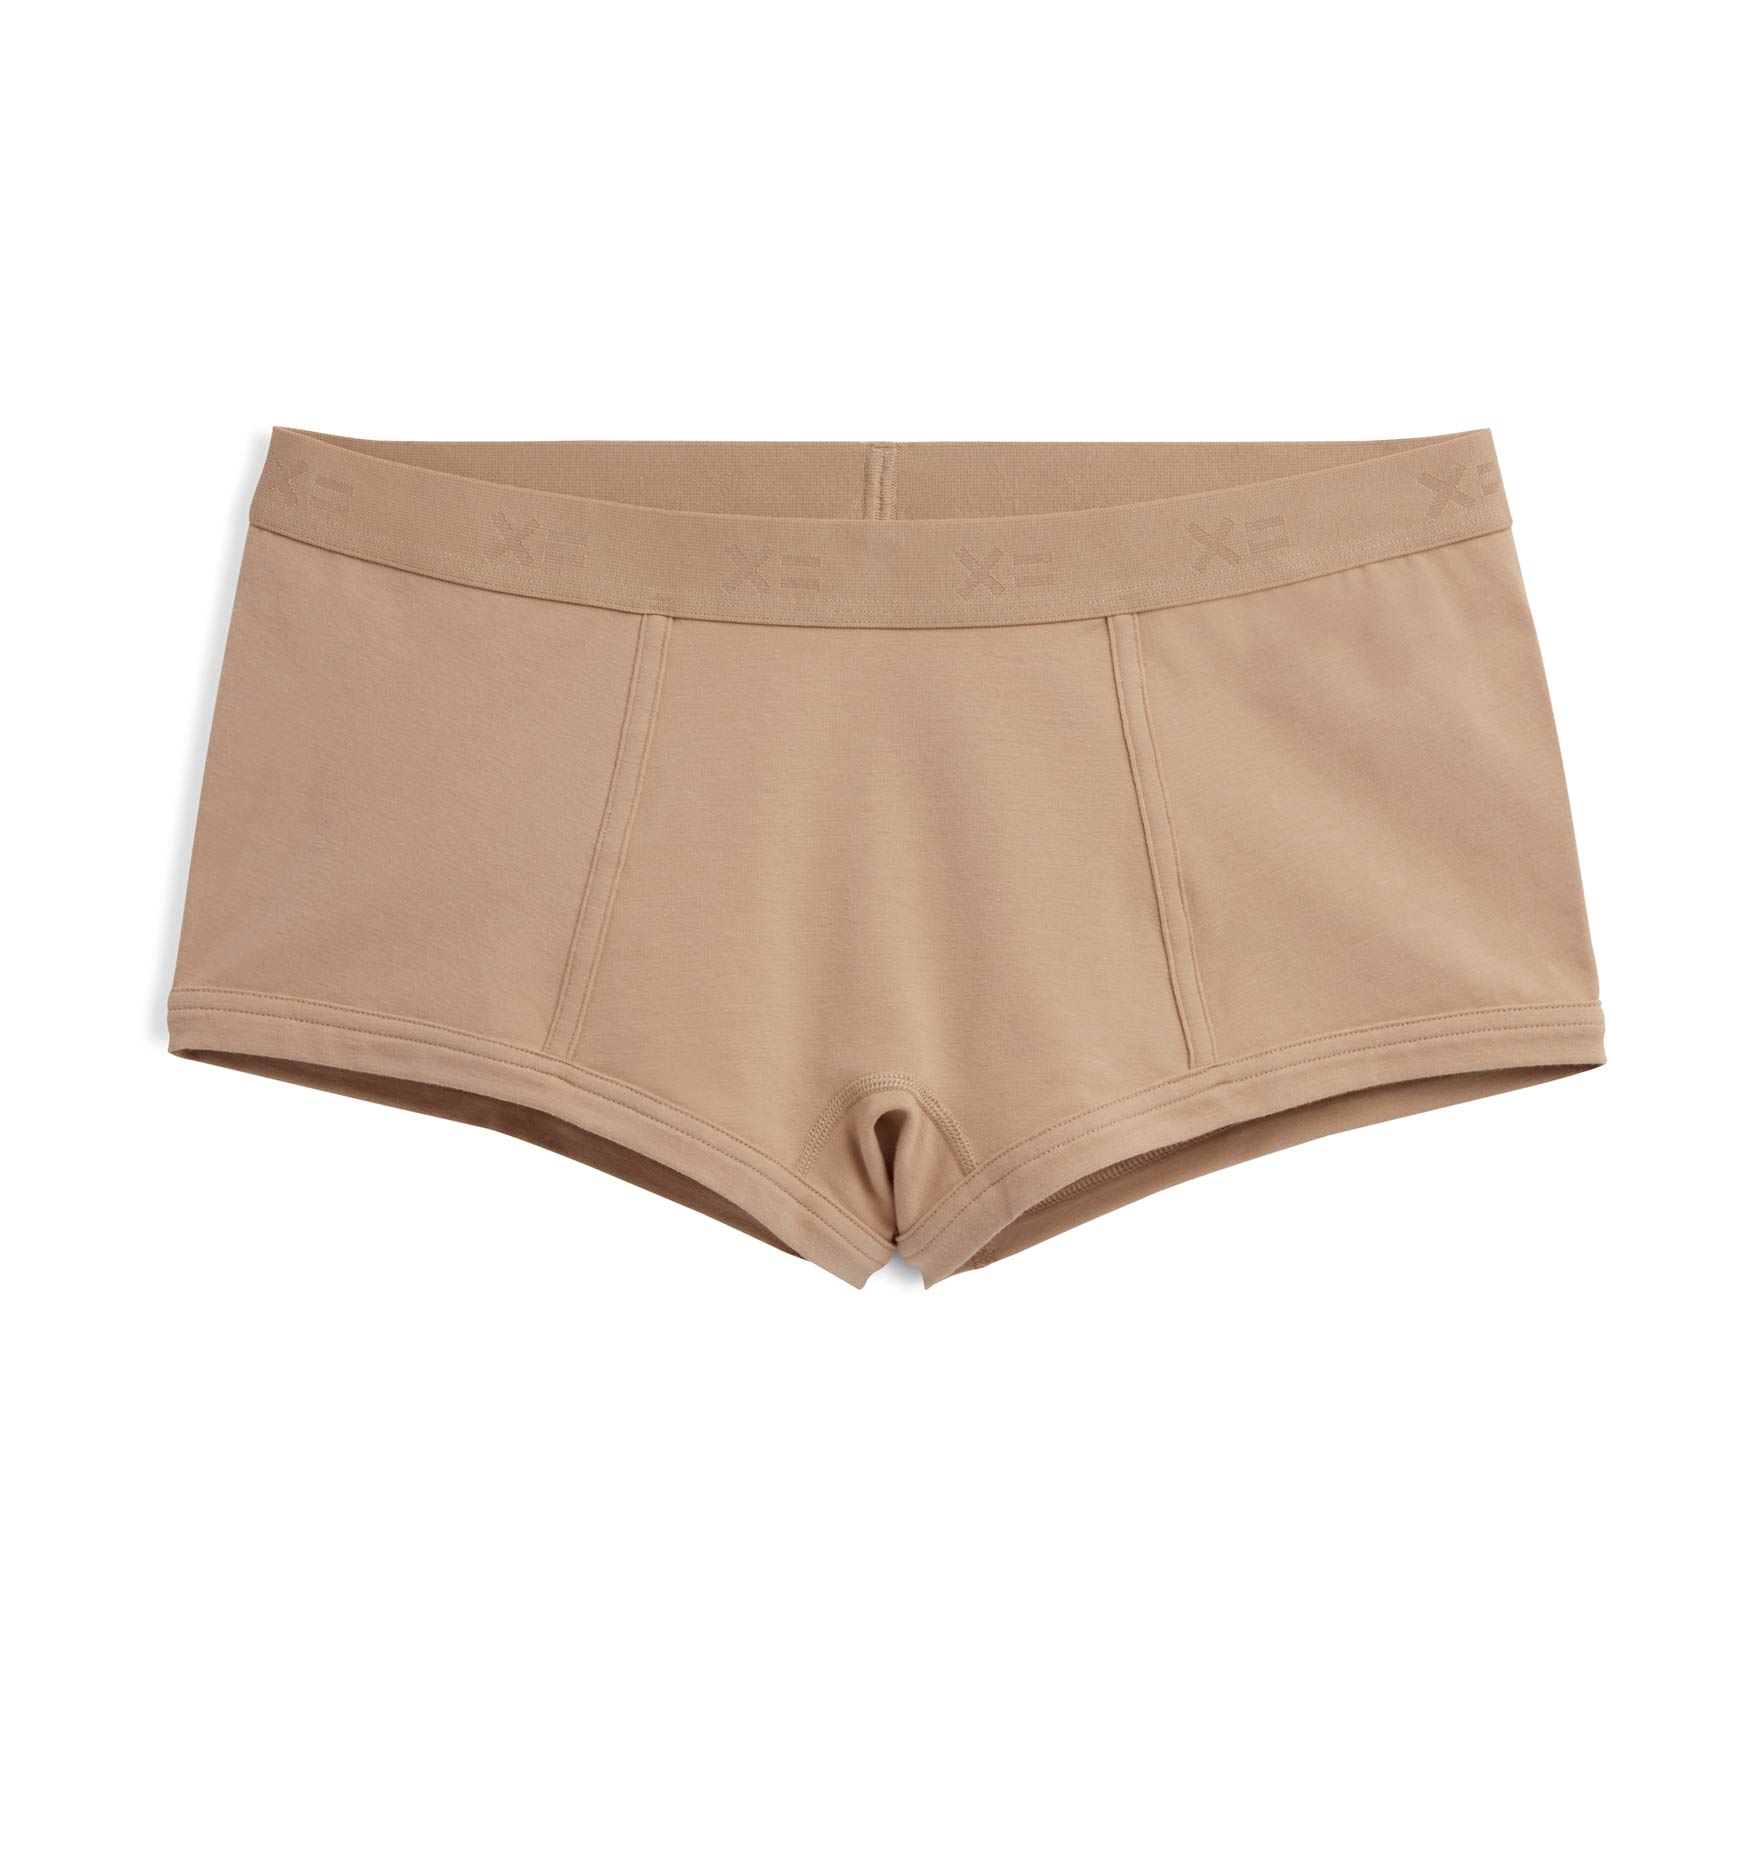 Pin on boi shorts/cute panties